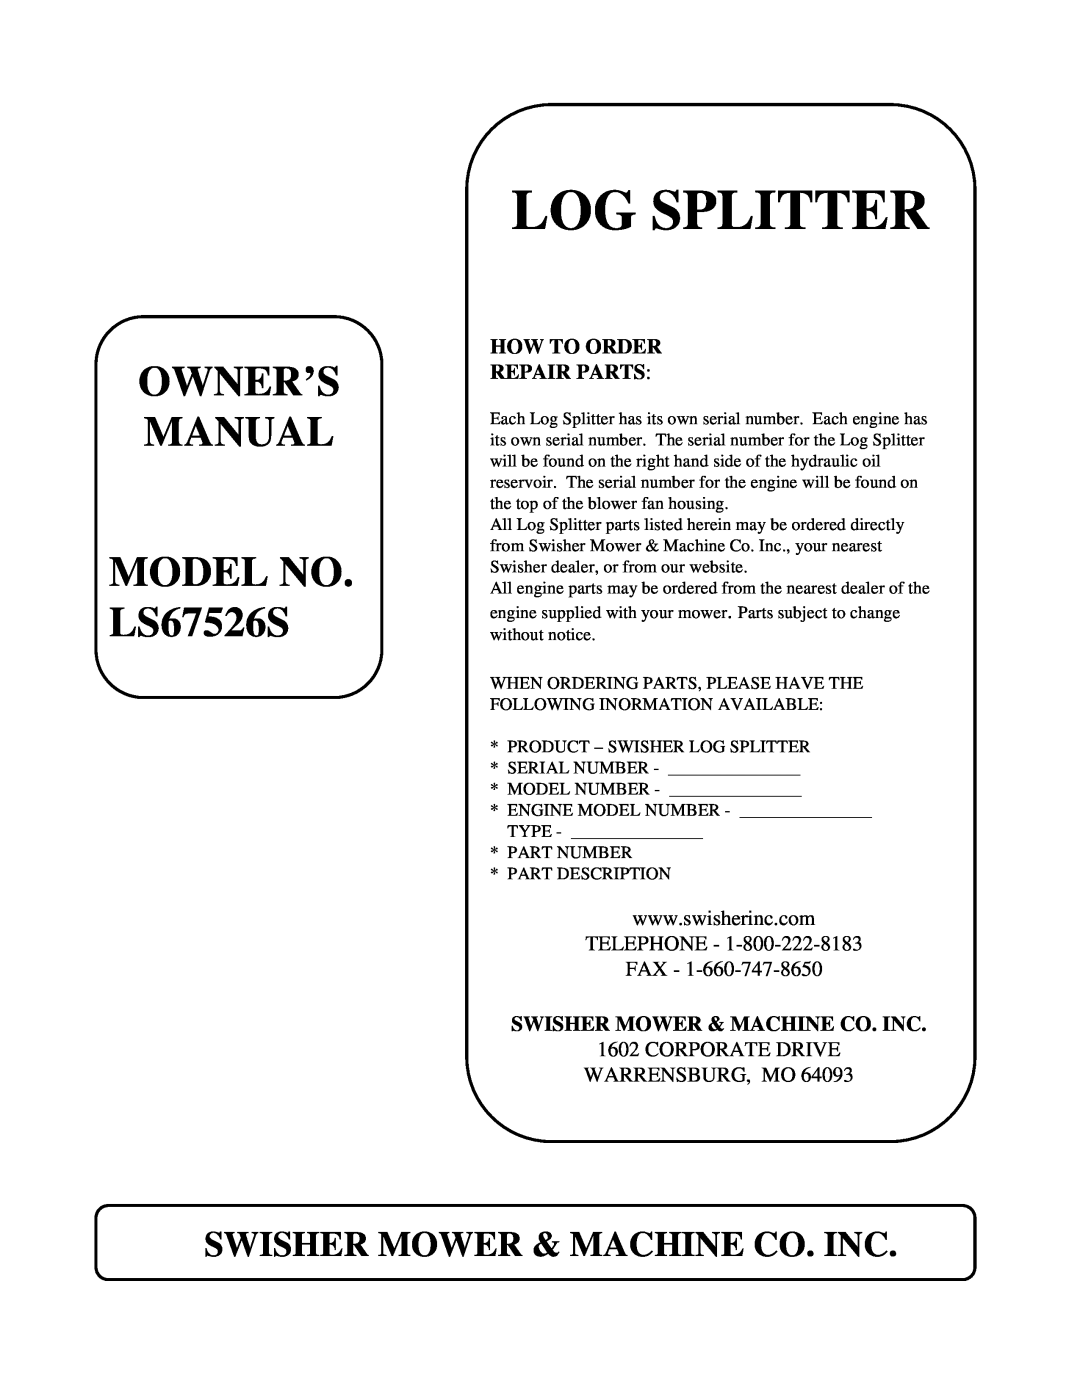 Swisher manual Howtoorder Repairparts, Swishermower&Machineco.Inc, Logsplitter, MODELNO. LS67526S 